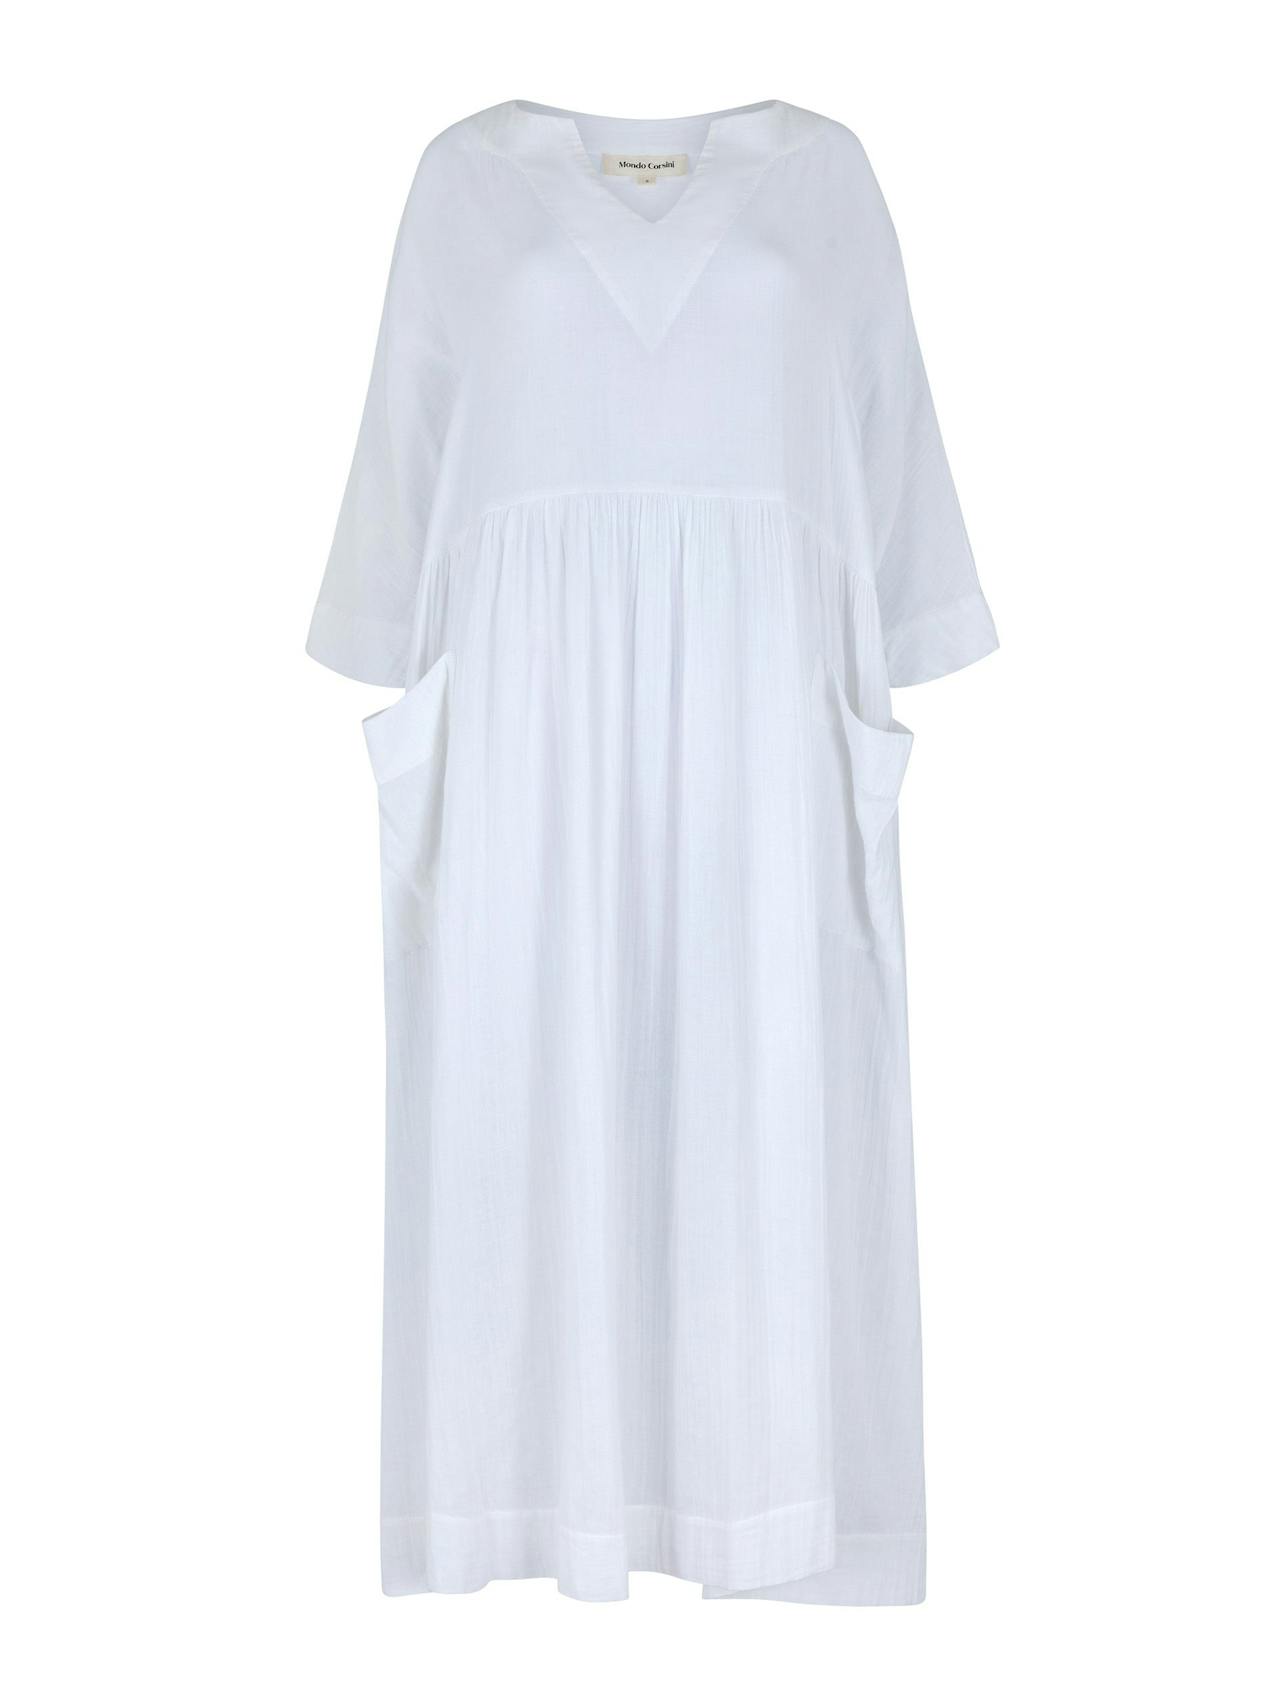 Daphne white cotton dress